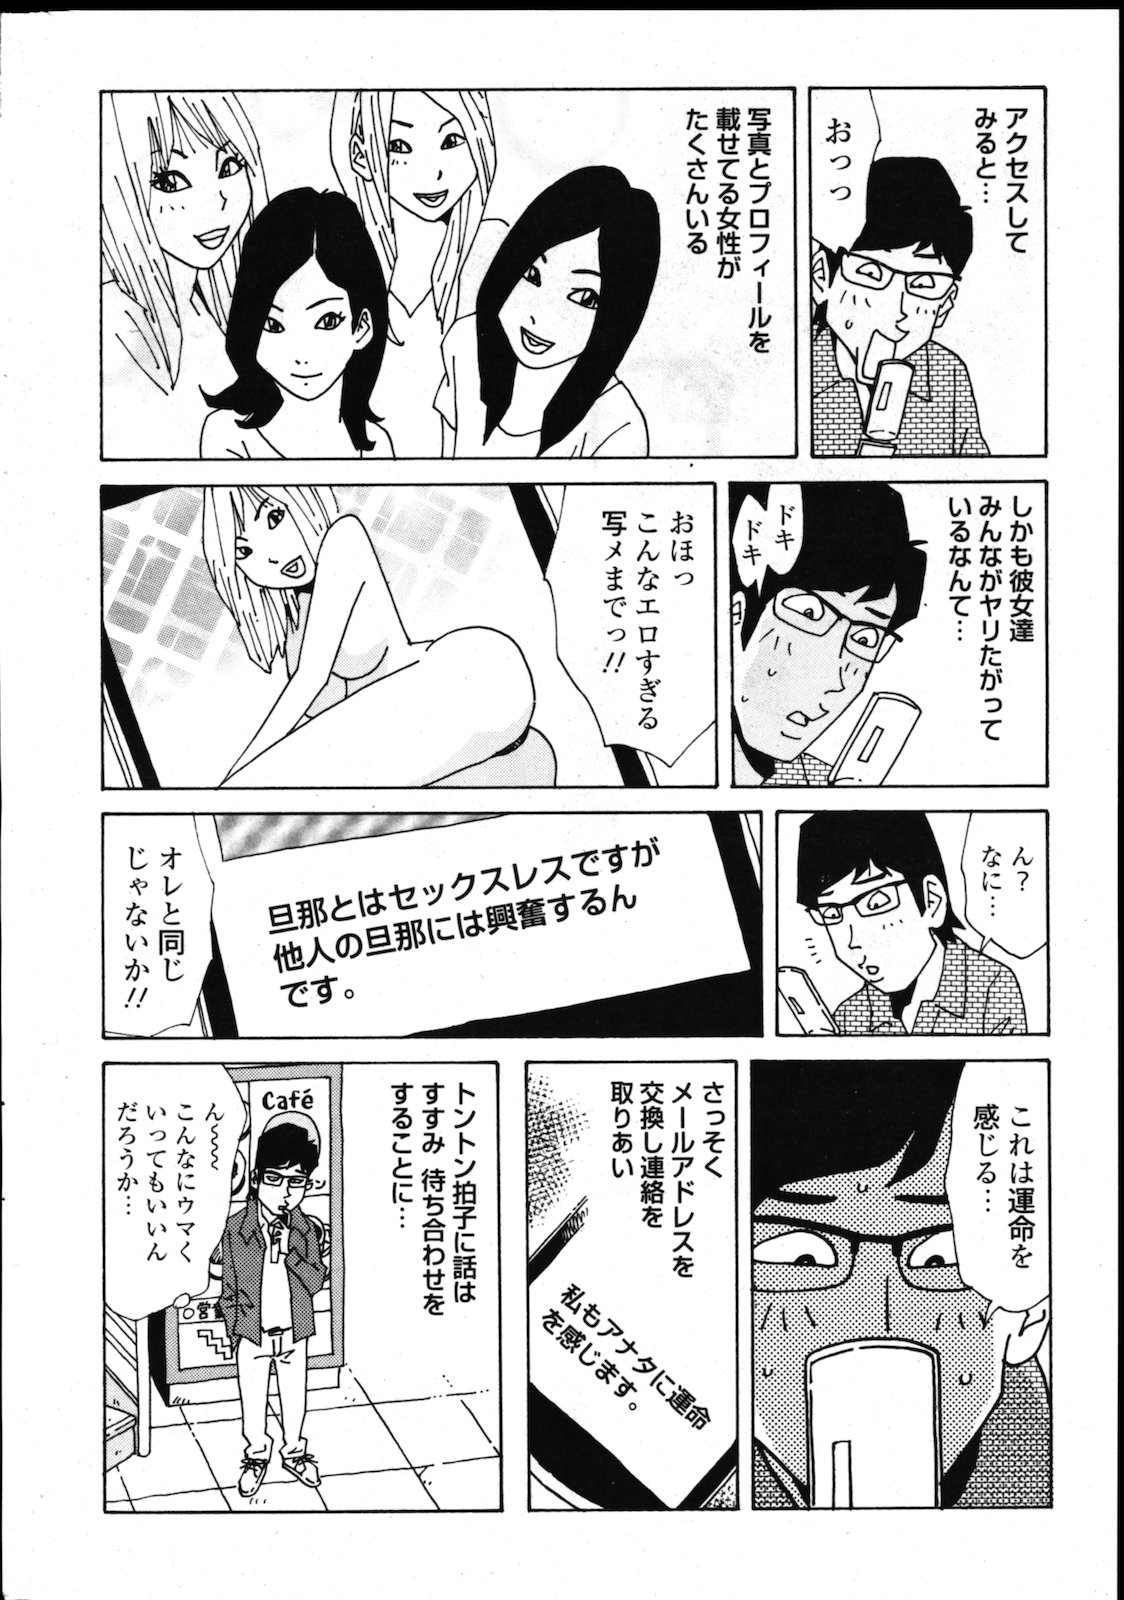 [雑誌] COMIC 失楽天 Vol.02 COMIC 快楽天 2011年08月号増刊